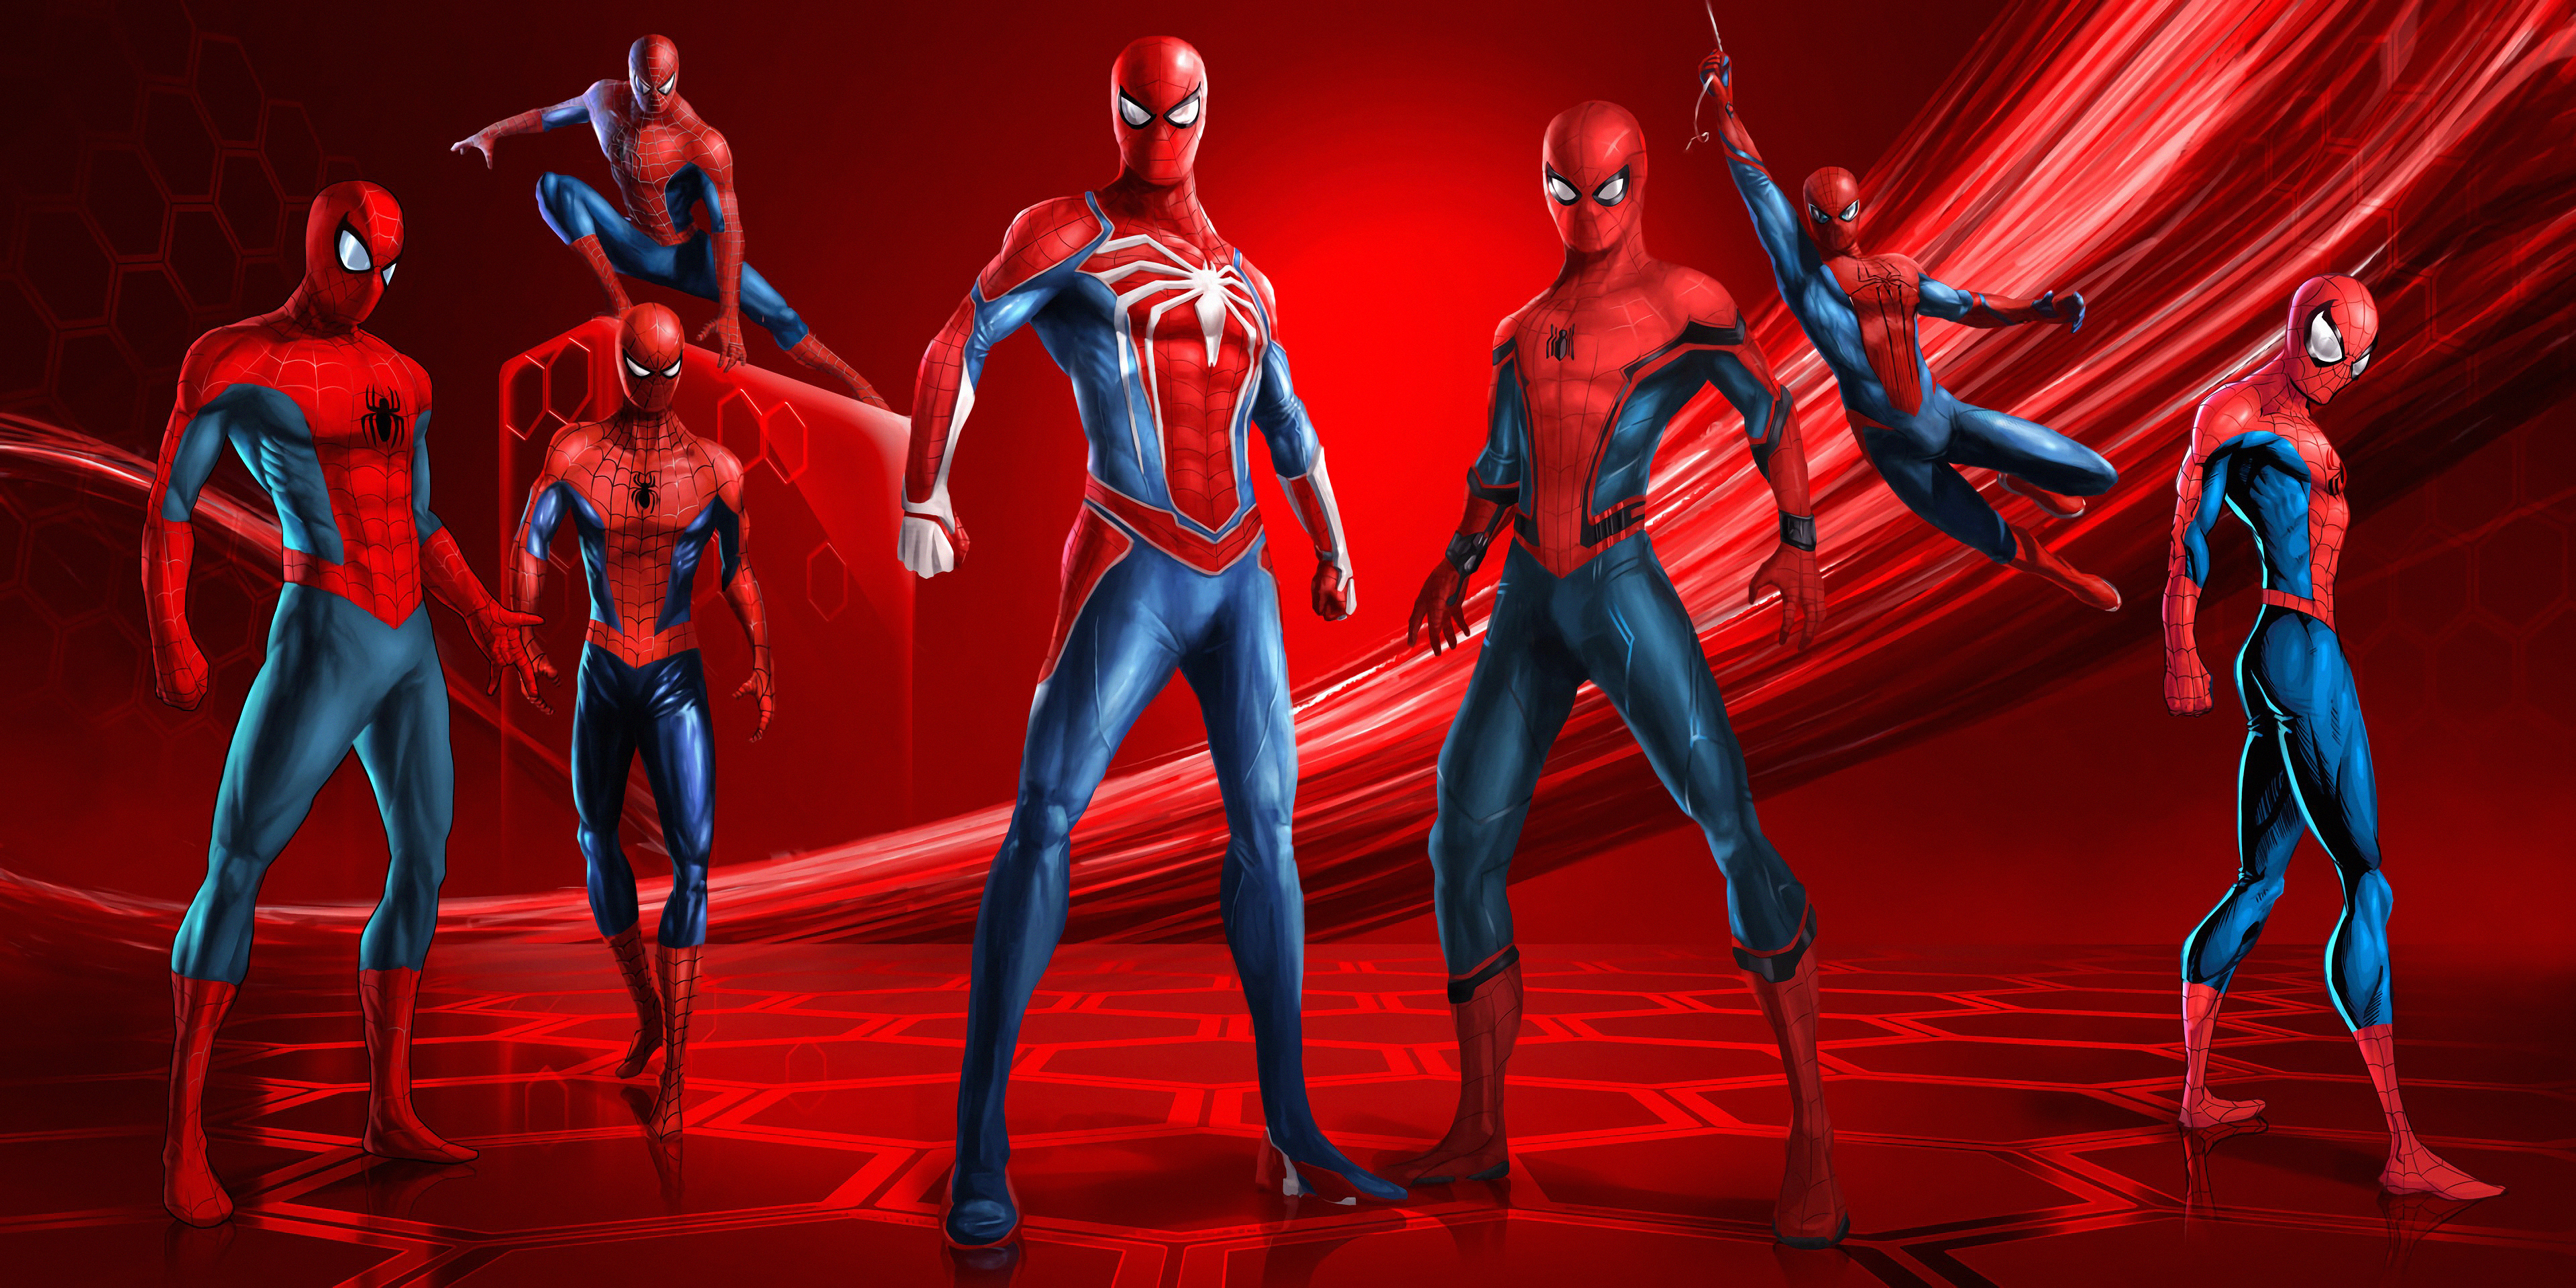 fond d'écran spiderman hd,rouge,personnage fictif,super héros,humain,scène